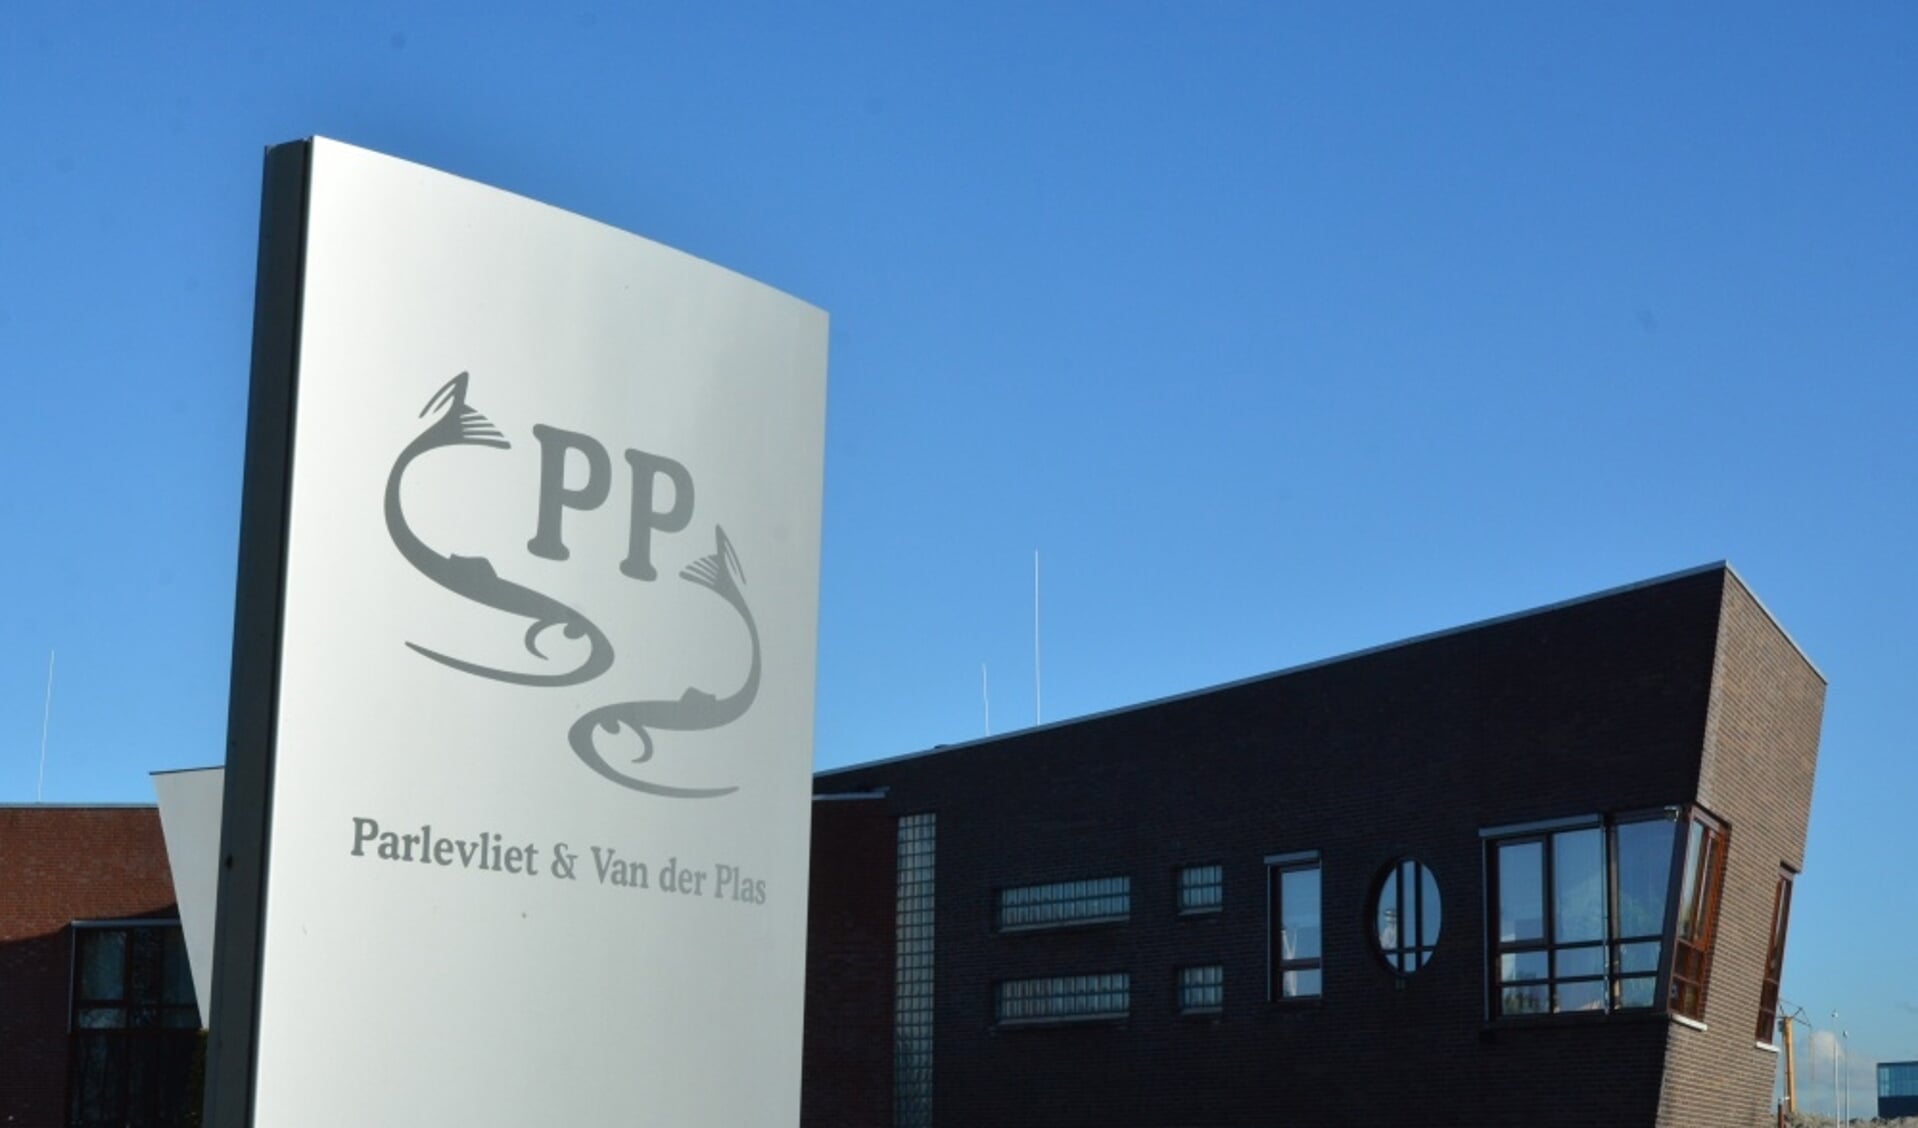  Het hoofdkantoor van Parlevliet & Van der Plas in Valkenburg, gemeente Katwijk.